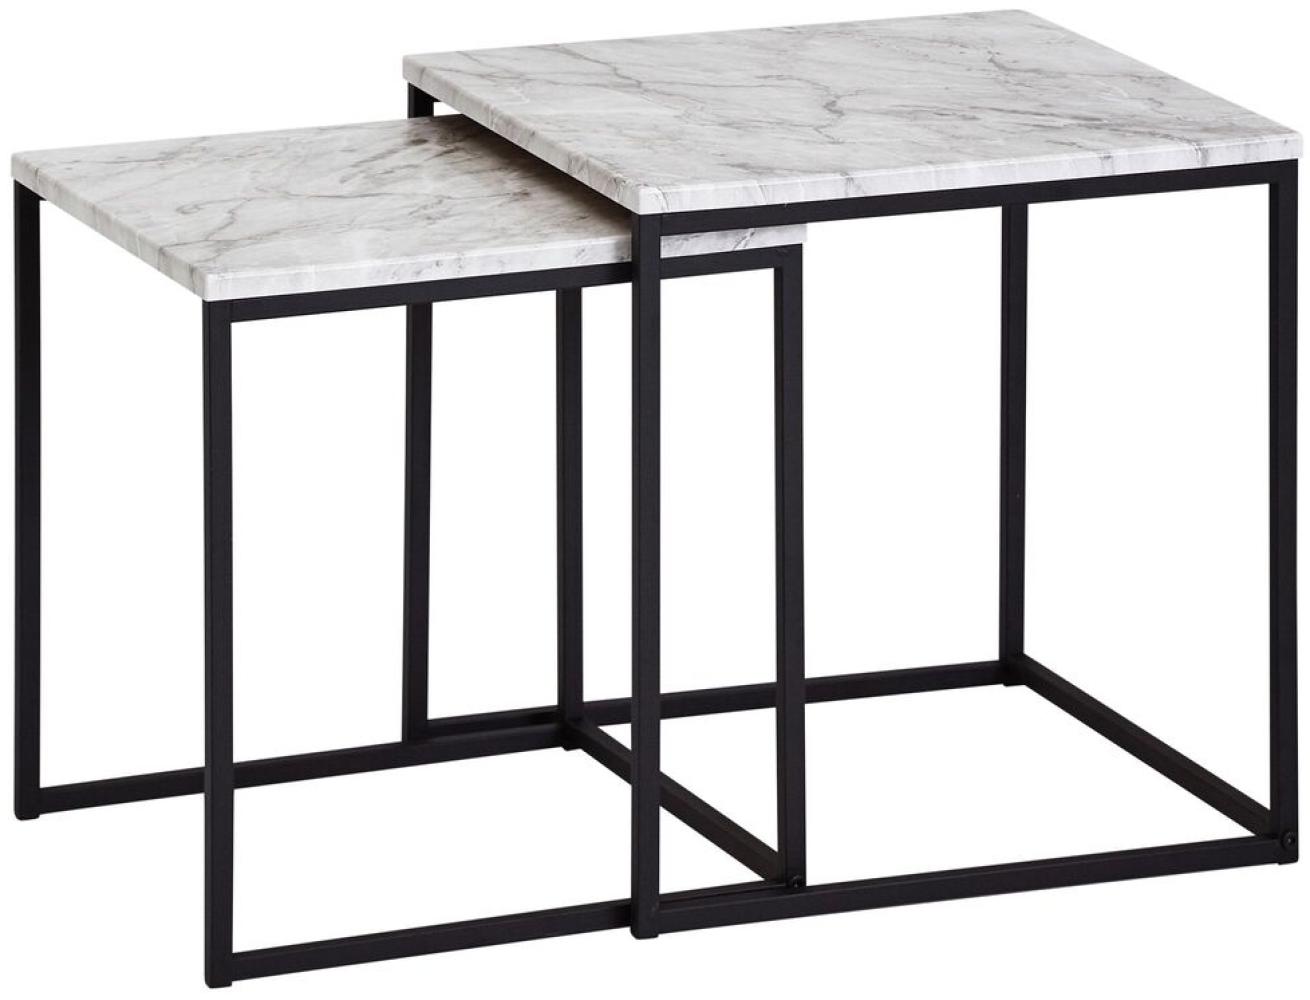 WERAN Design Beistelltisch 2er Set Marmor Optik Weiß Couchtisch 2 teilig Tischgestell Schwarz Bild 1